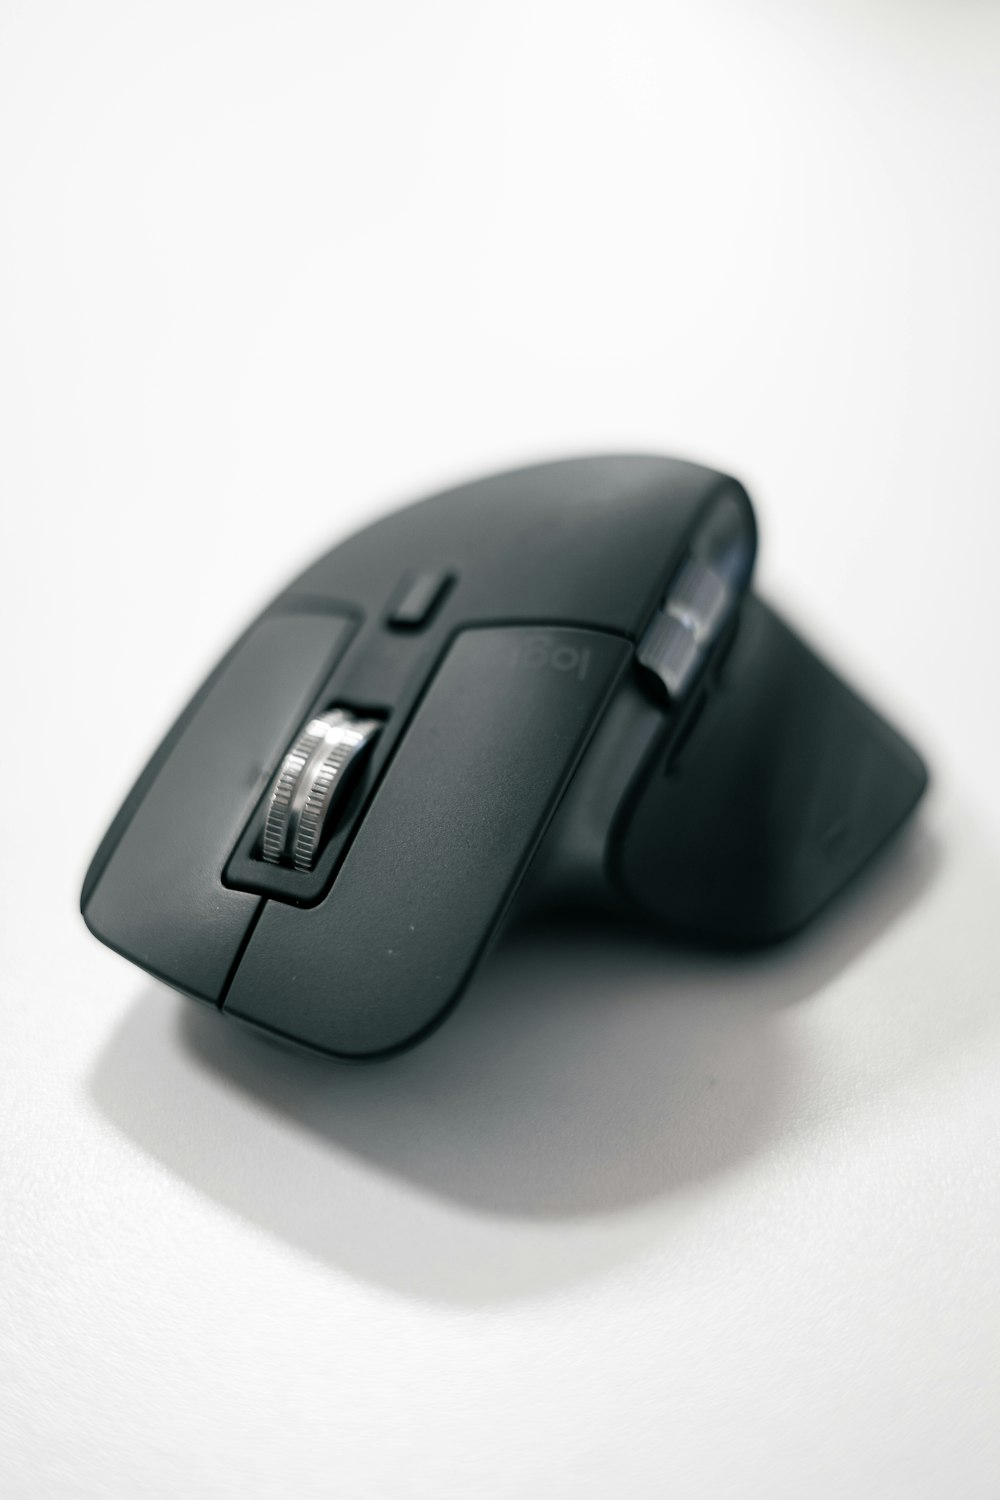 une souris d’ordinateur noire